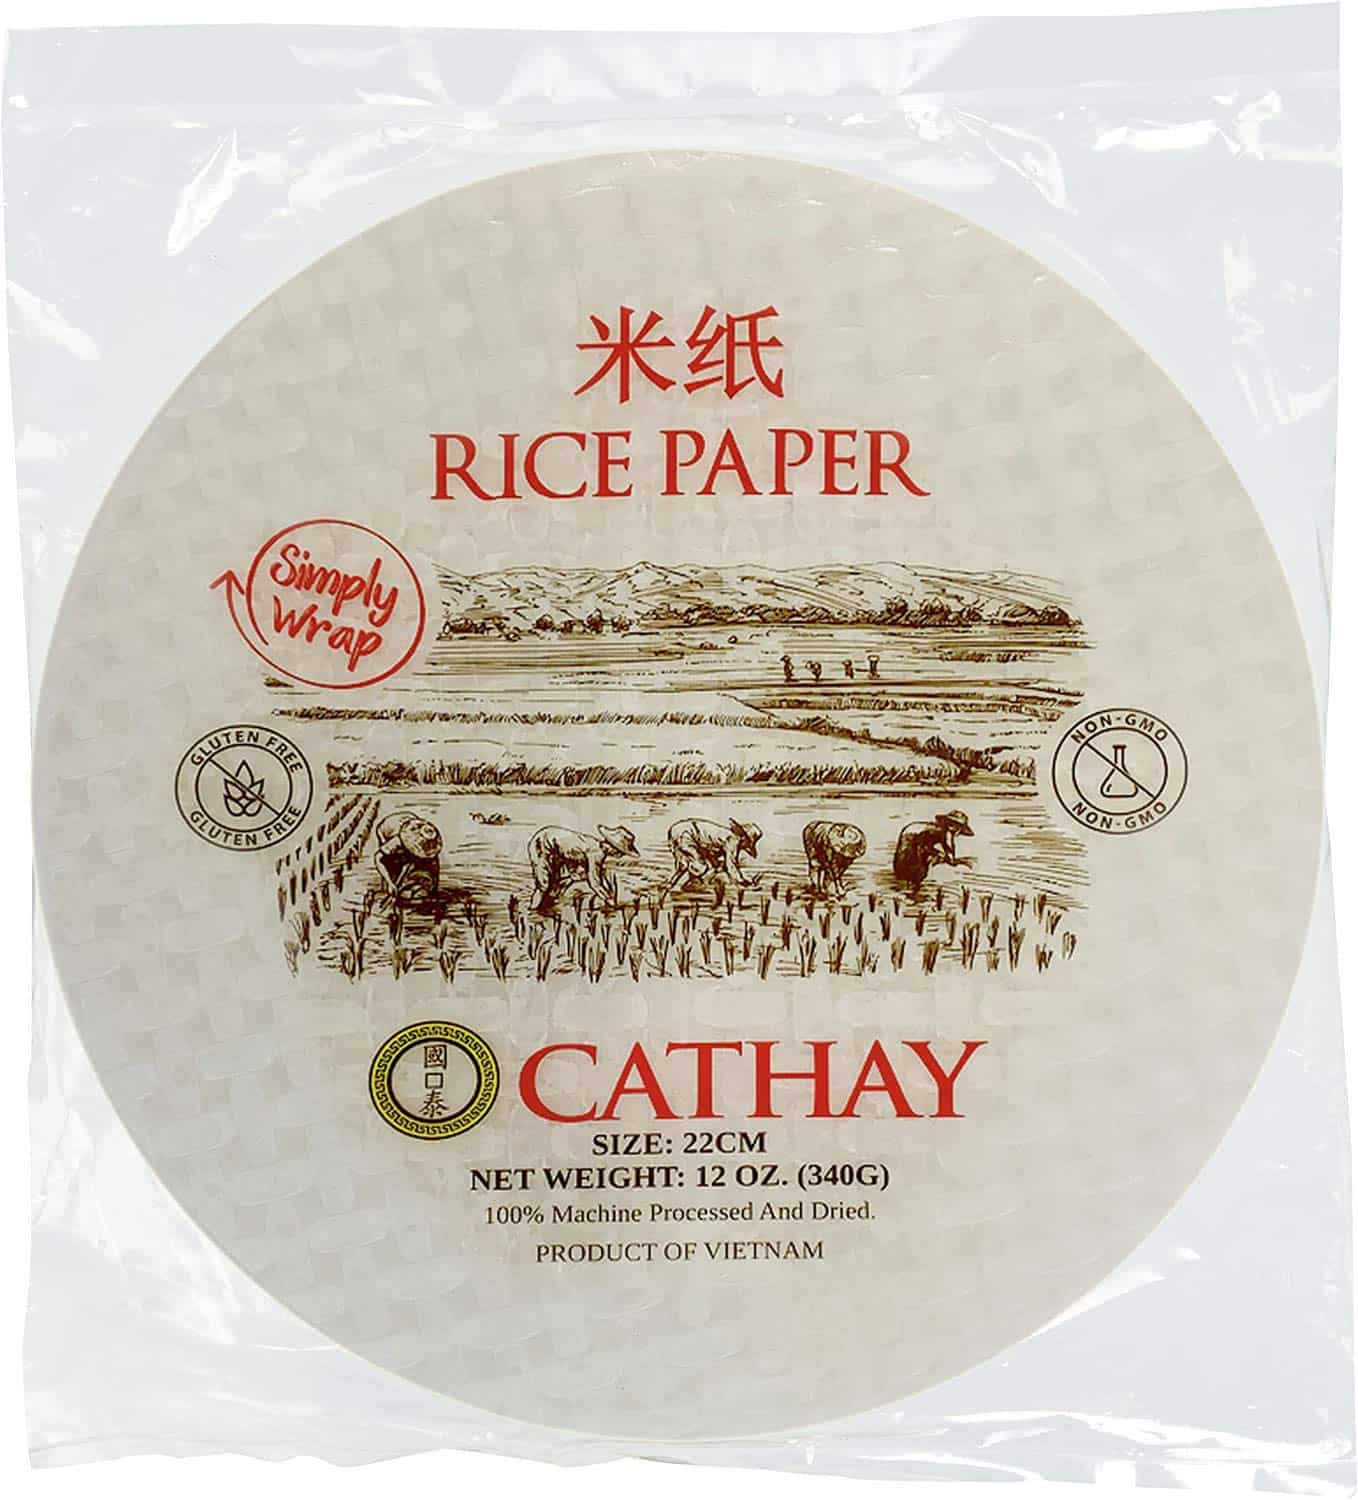 Envolturas de papel de arroz como sustituto de las envolturas de rollo de huevo